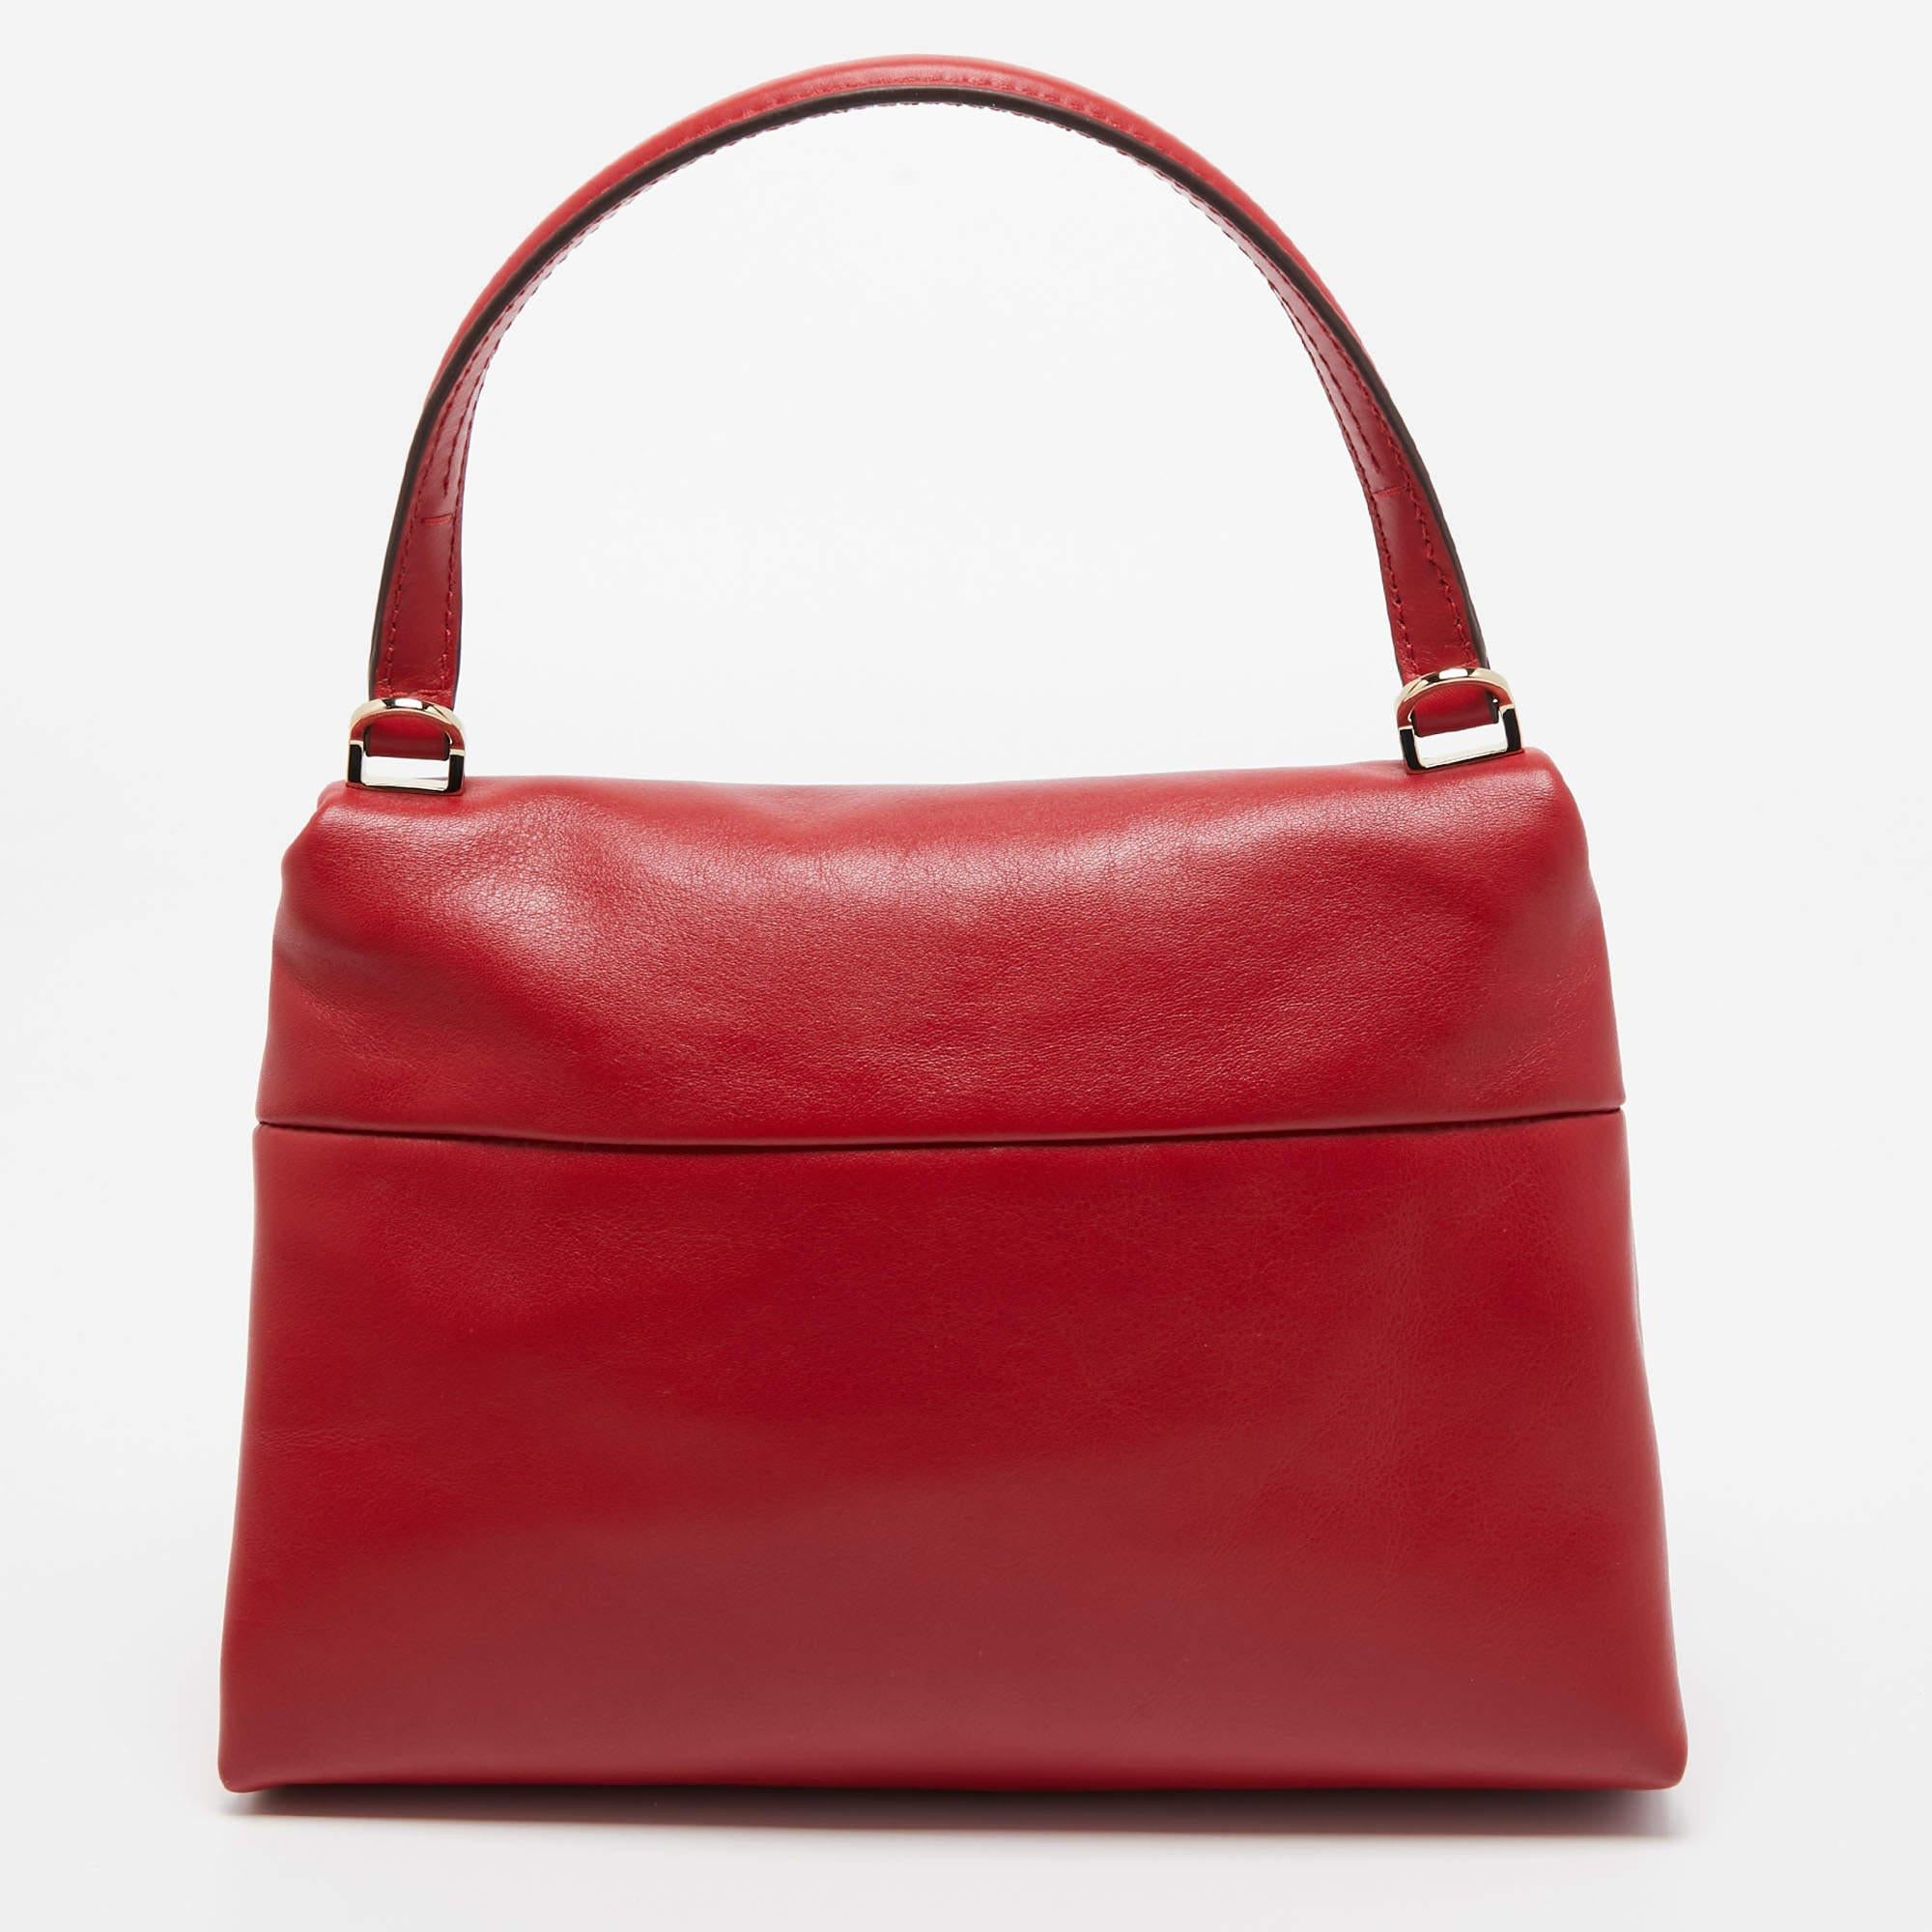 Ce sac Carolina Herrera est un exemple des designs raffinés de la marque qui sont habilement réalisés pour projeter un charme classique. Il s'agit d'une création fonctionnelle avec un attrait particulier.

Comprend : Sac à poussière d'origine,